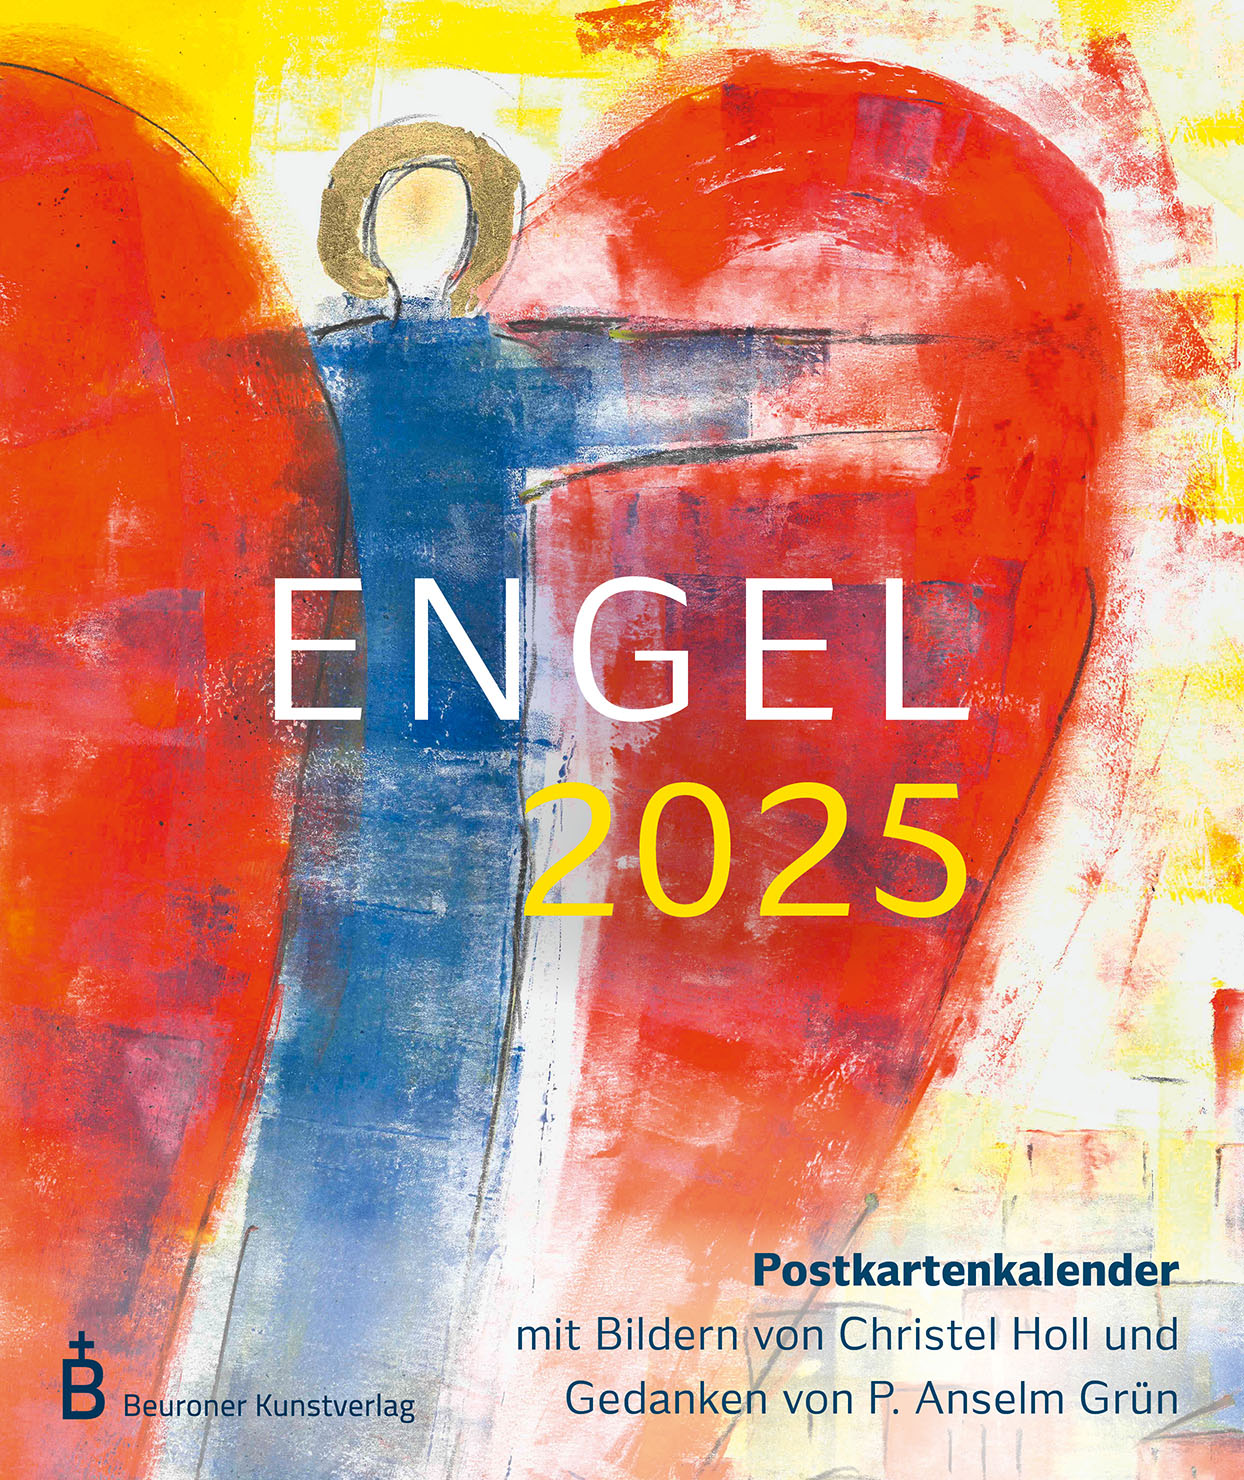  Postkartenkalender - Engel 2025